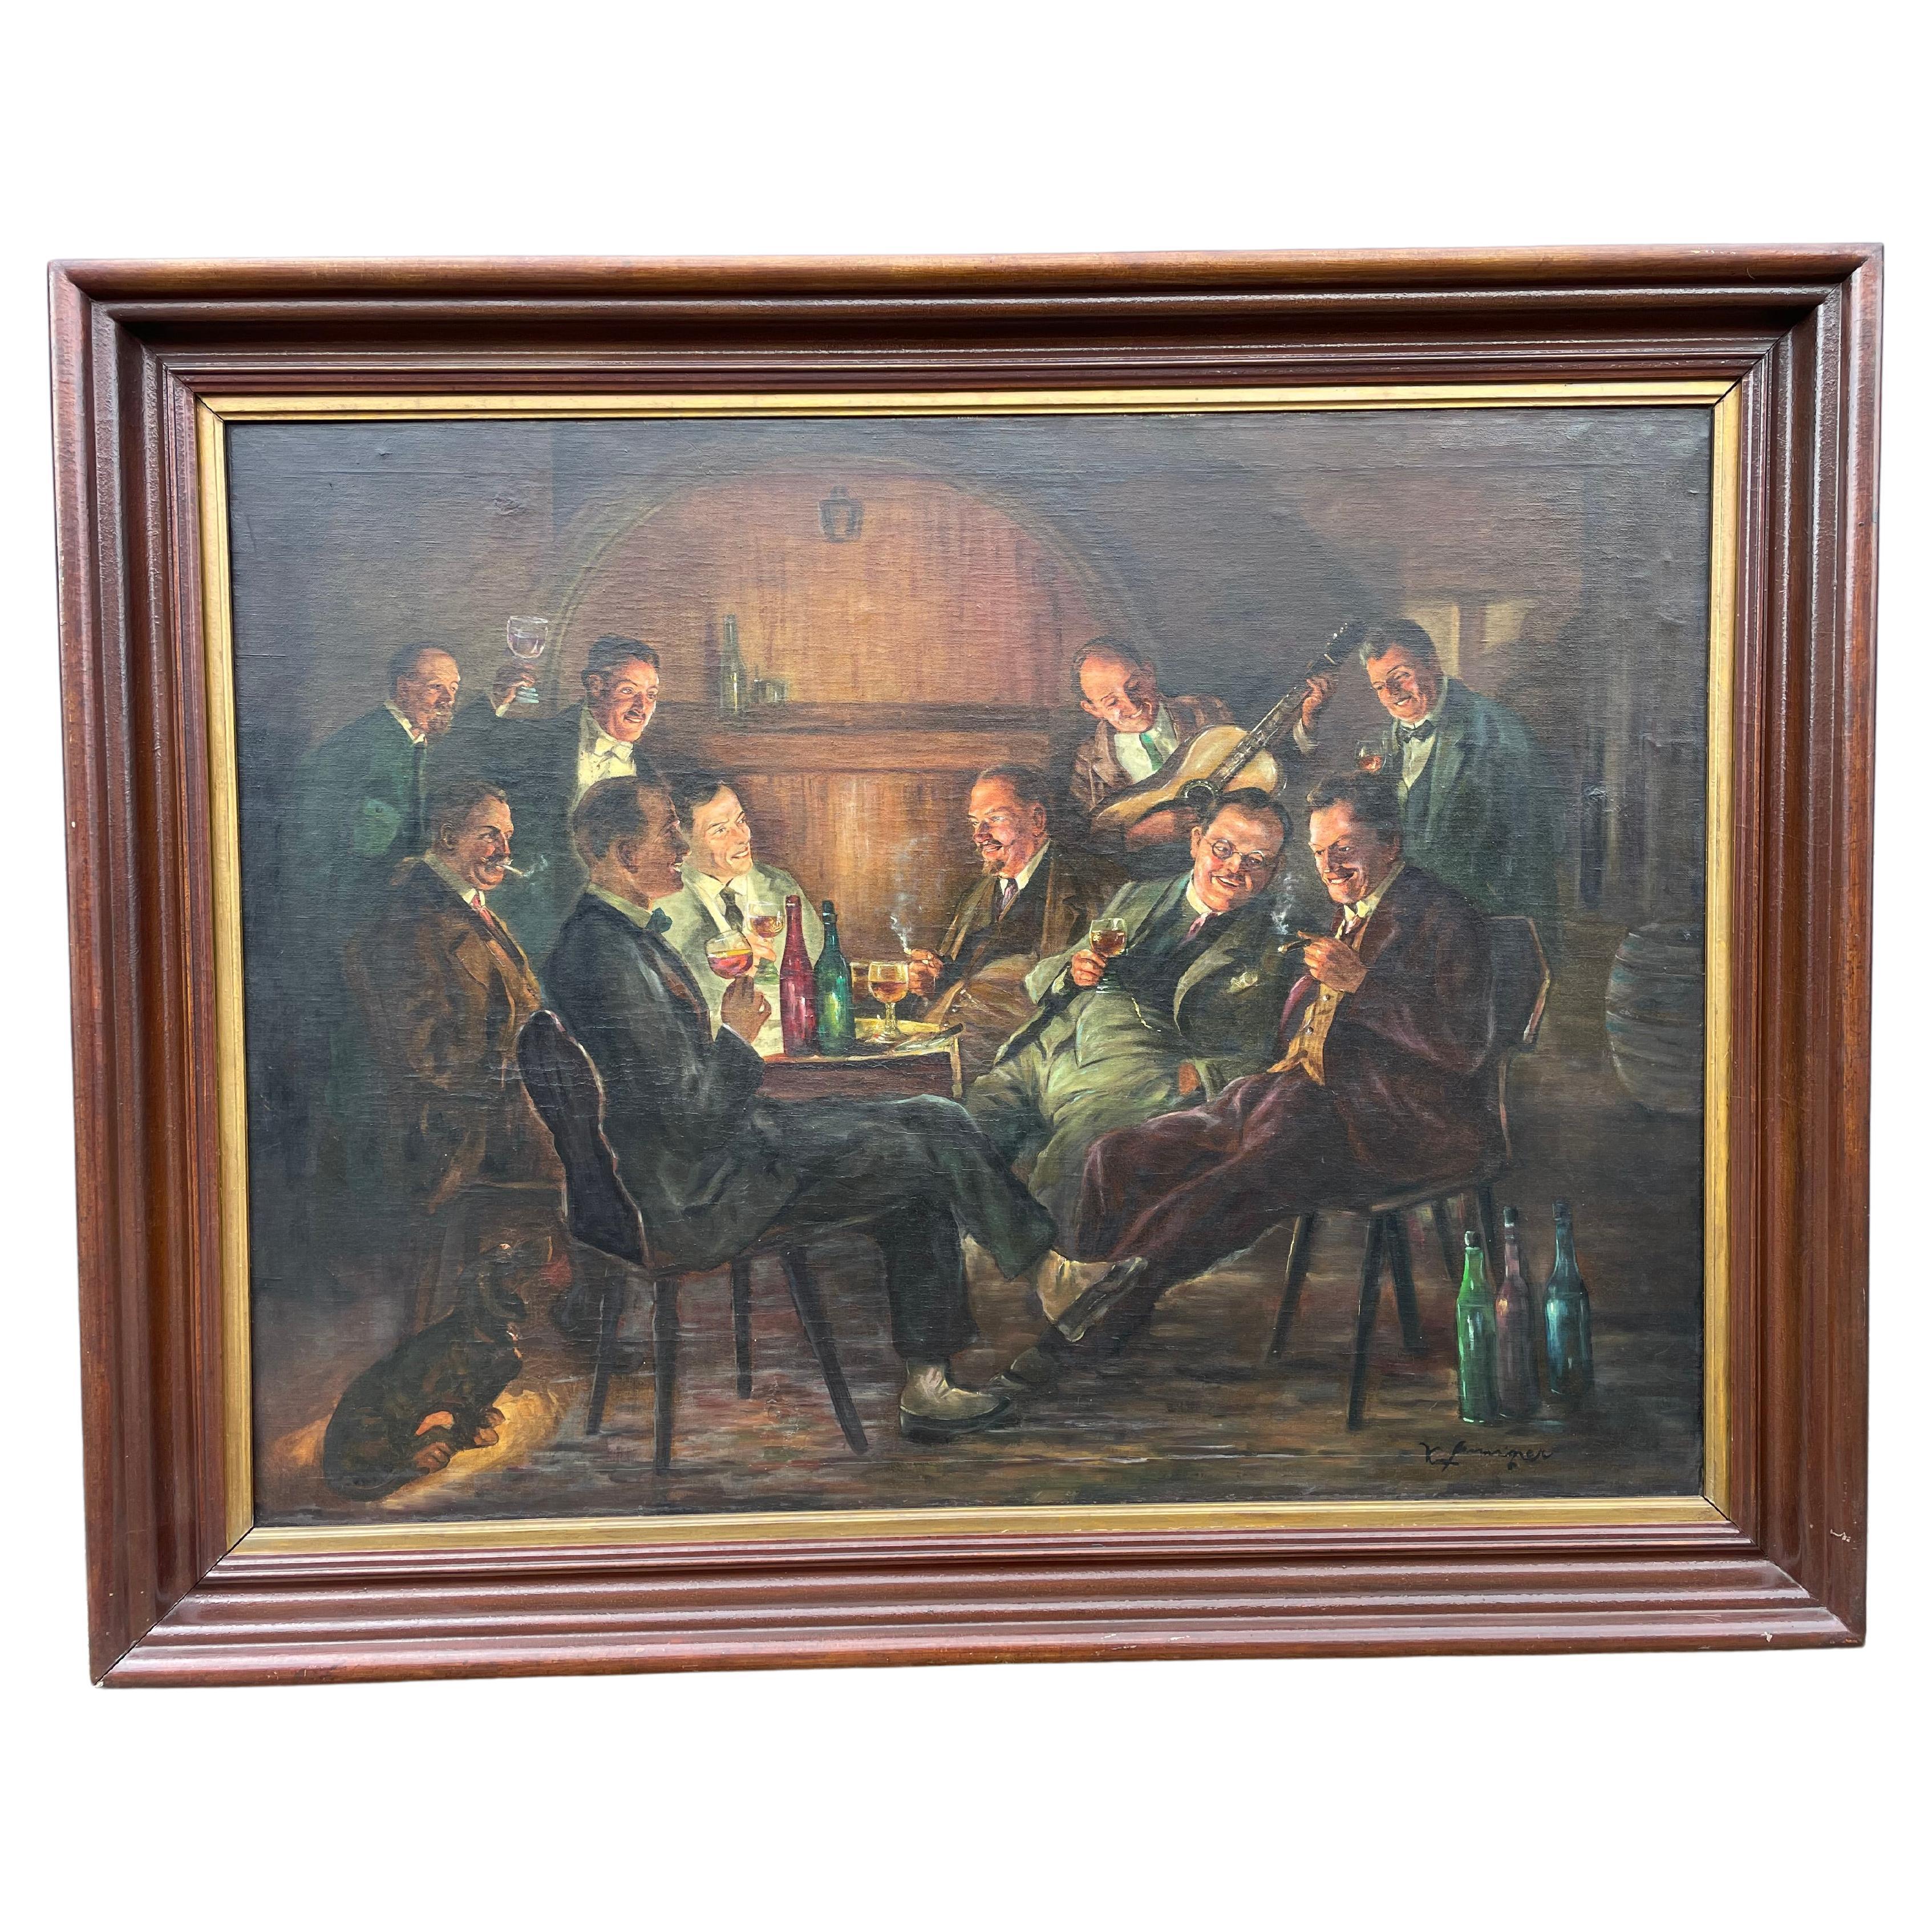 Großes antikes Gemälde, Öl auf Leinwand, Gemälde „Celebration“, Männer beim Wein und Rauchen, Öl